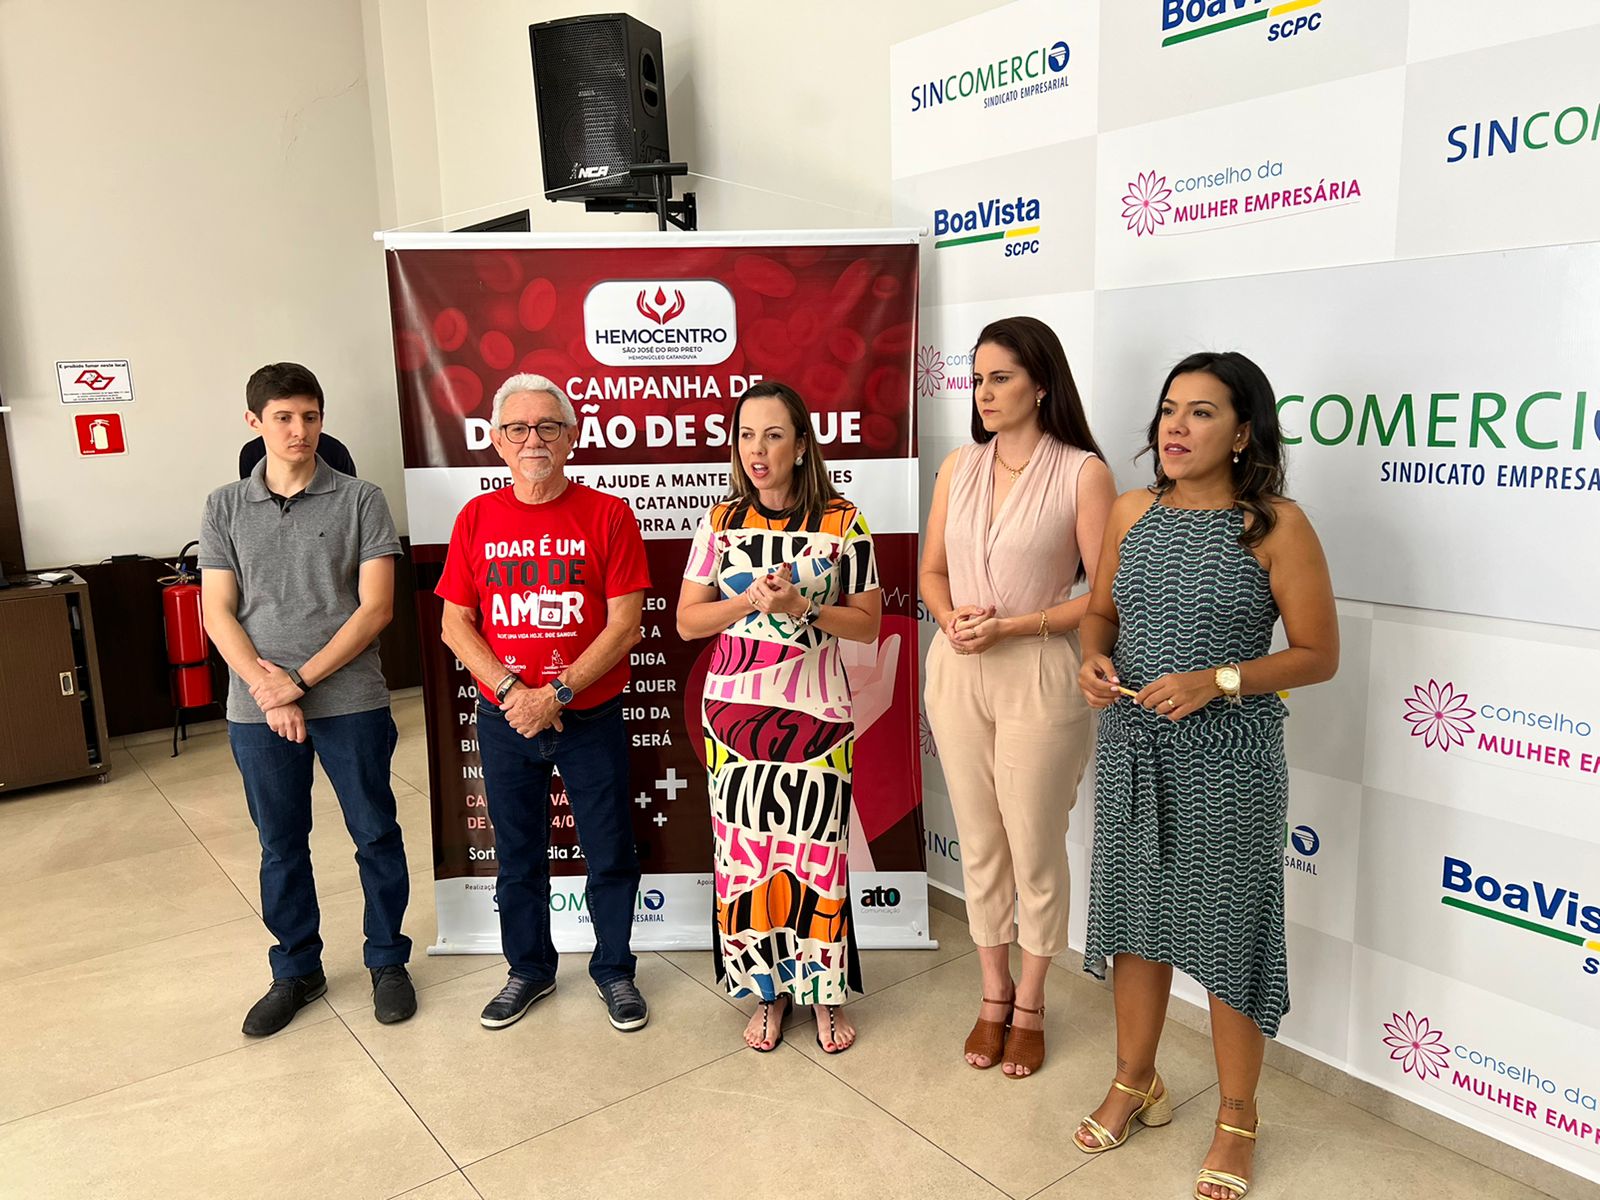 Sincomercio lança campanha de doação de sangue em prol Hemonúcleo Catanduva